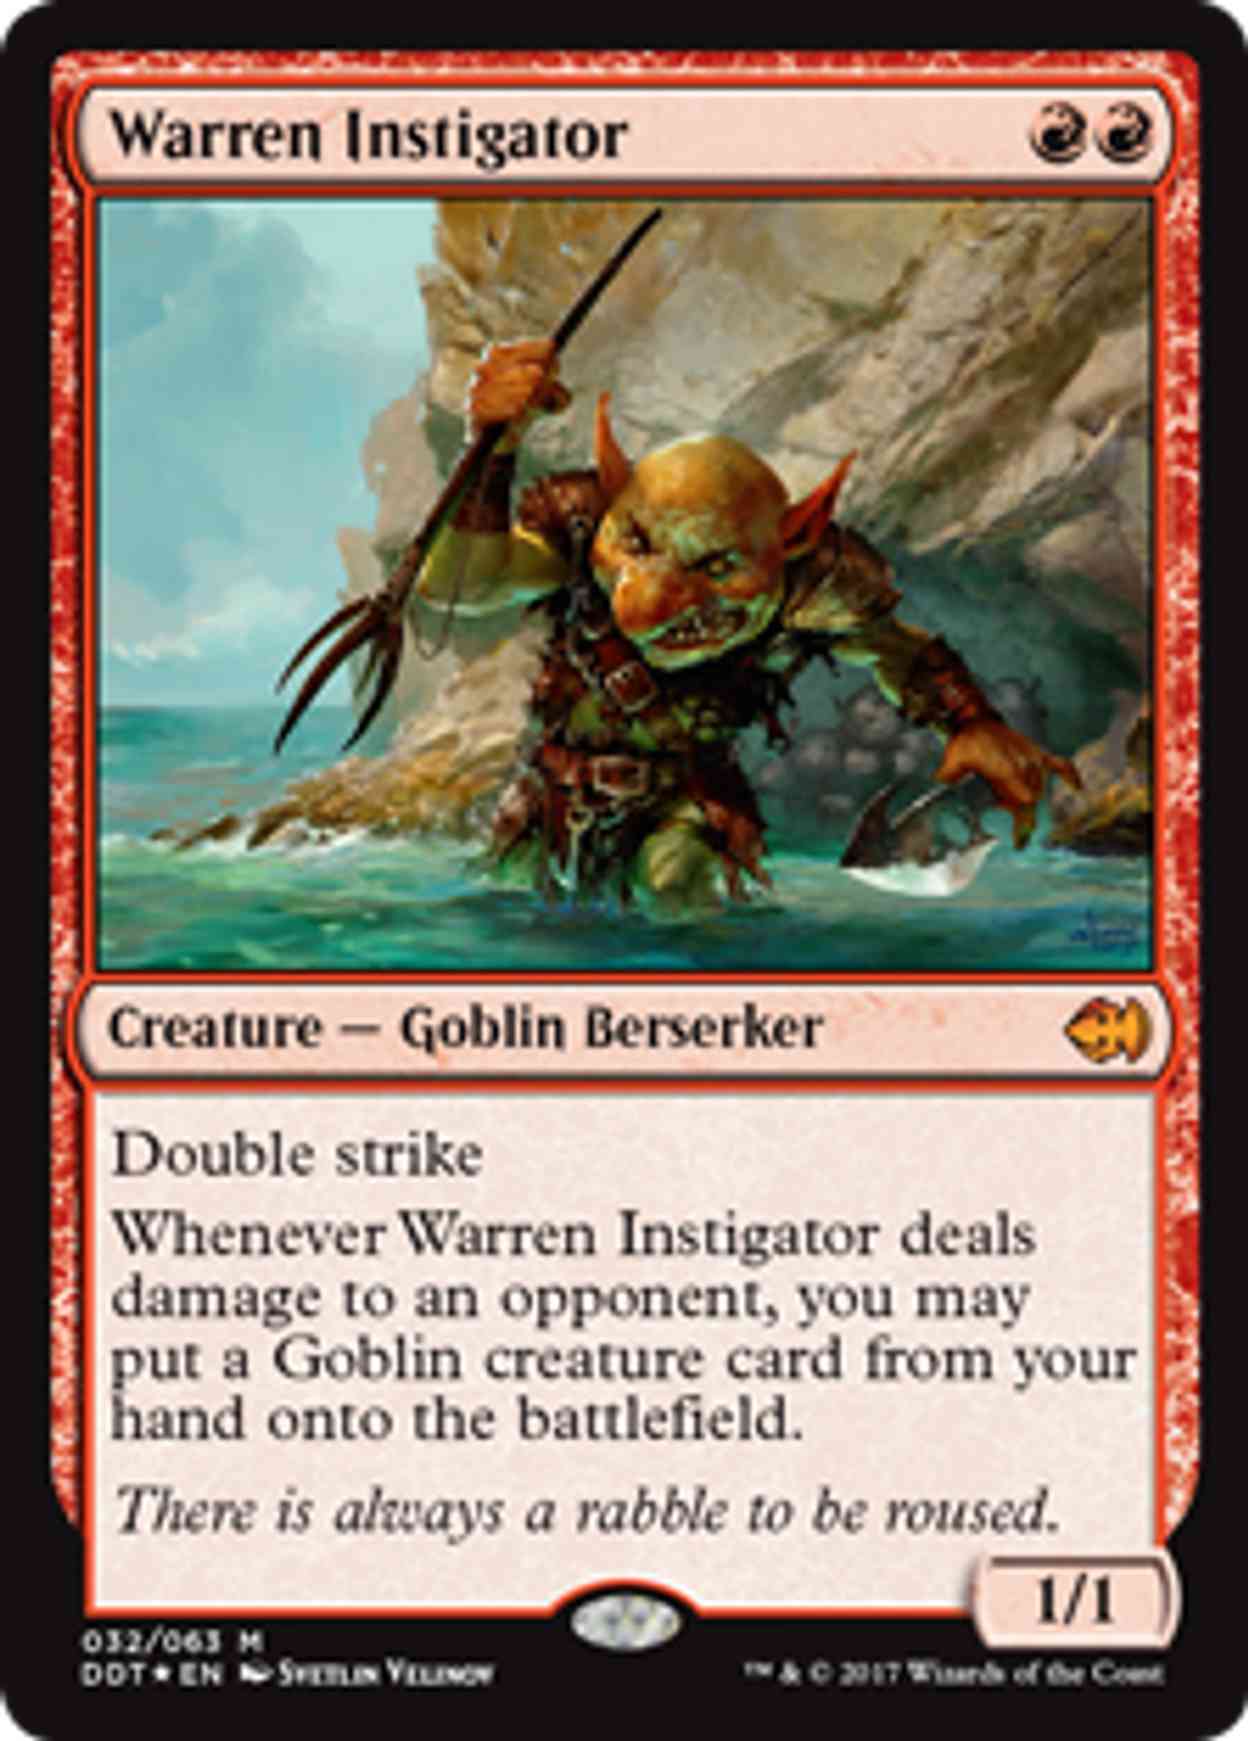 Warren Instigator magic card front